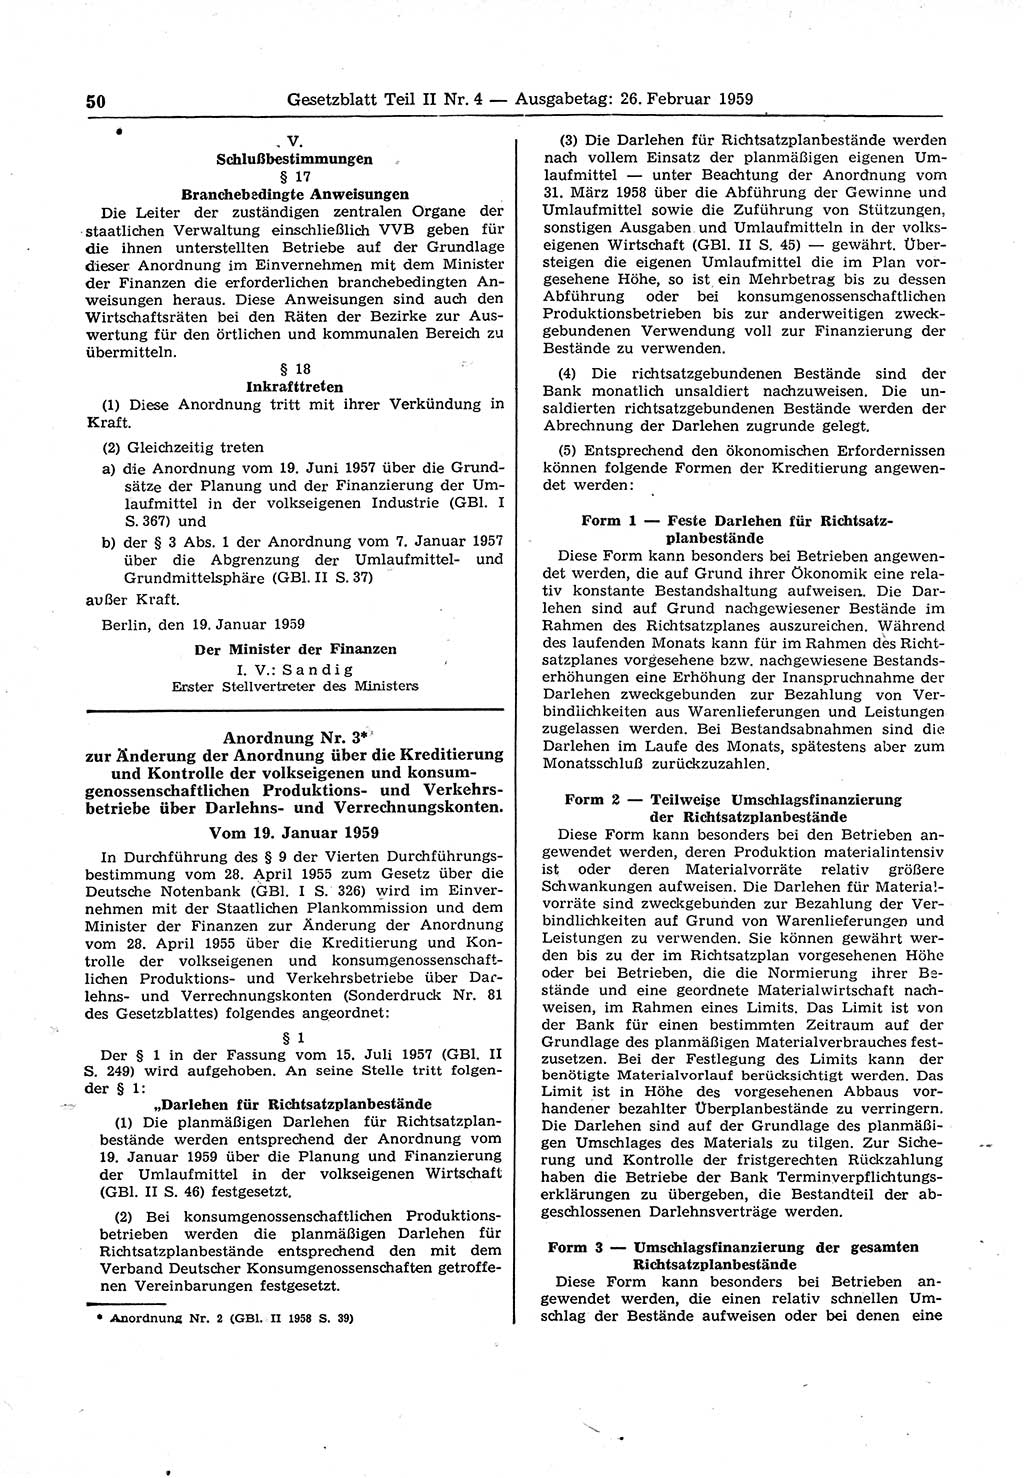 Gesetzblatt (GBl.) der Deutschen Demokratischen Republik (DDR) Teil ⅠⅠ 1959, Seite 50 (GBl. DDR ⅠⅠ 1959, S. 50)